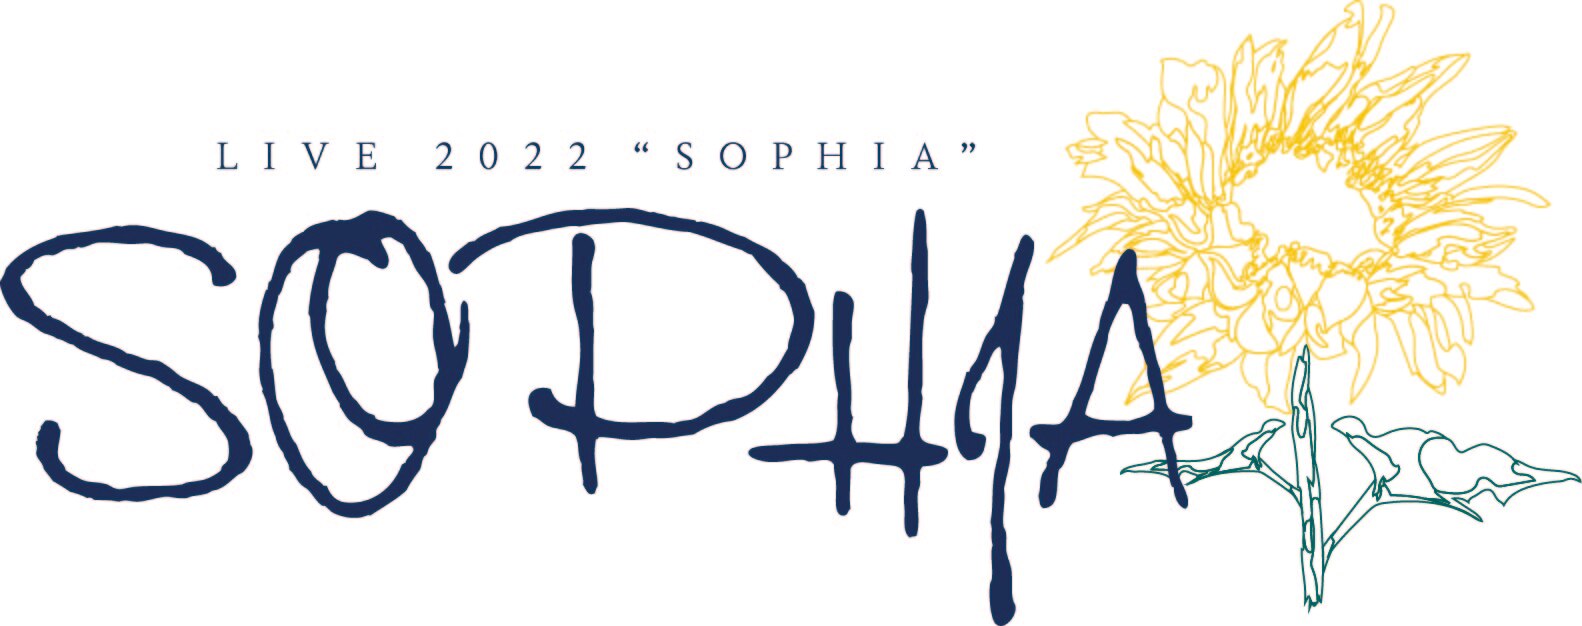 SOPHIA LIVE 2022 “SOPHIA” 詳細情報 - NEWS | SOPHIA オフィシャルサイト